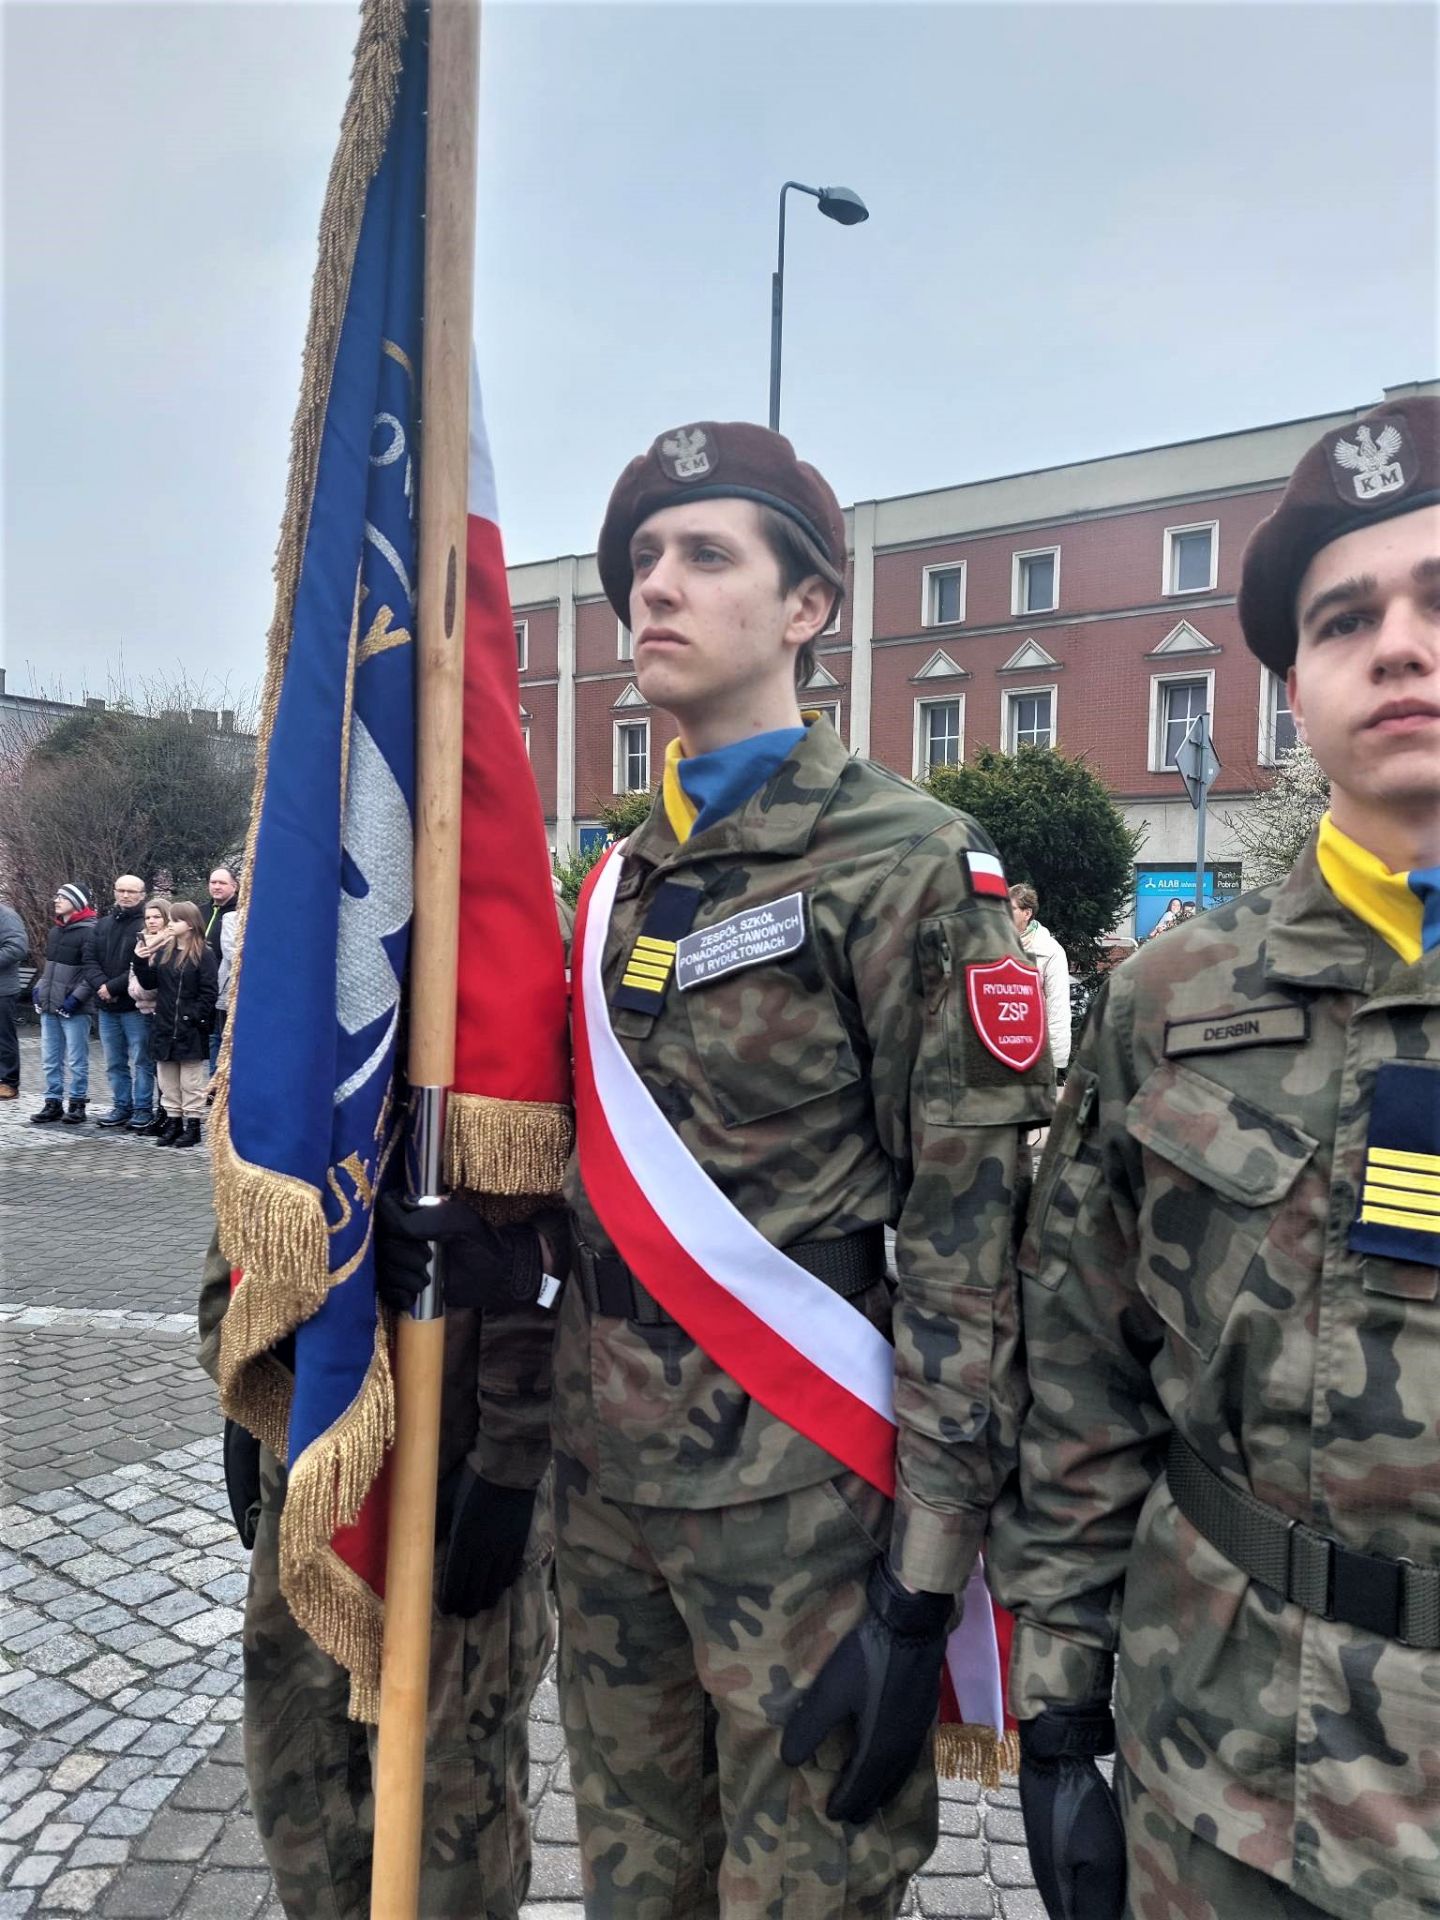 Na zdjęciu poczet sztandarowy szkoły, składający się z 3 młodych osób ubranych w mundury wojskowe, trzymających sztandar szkoły